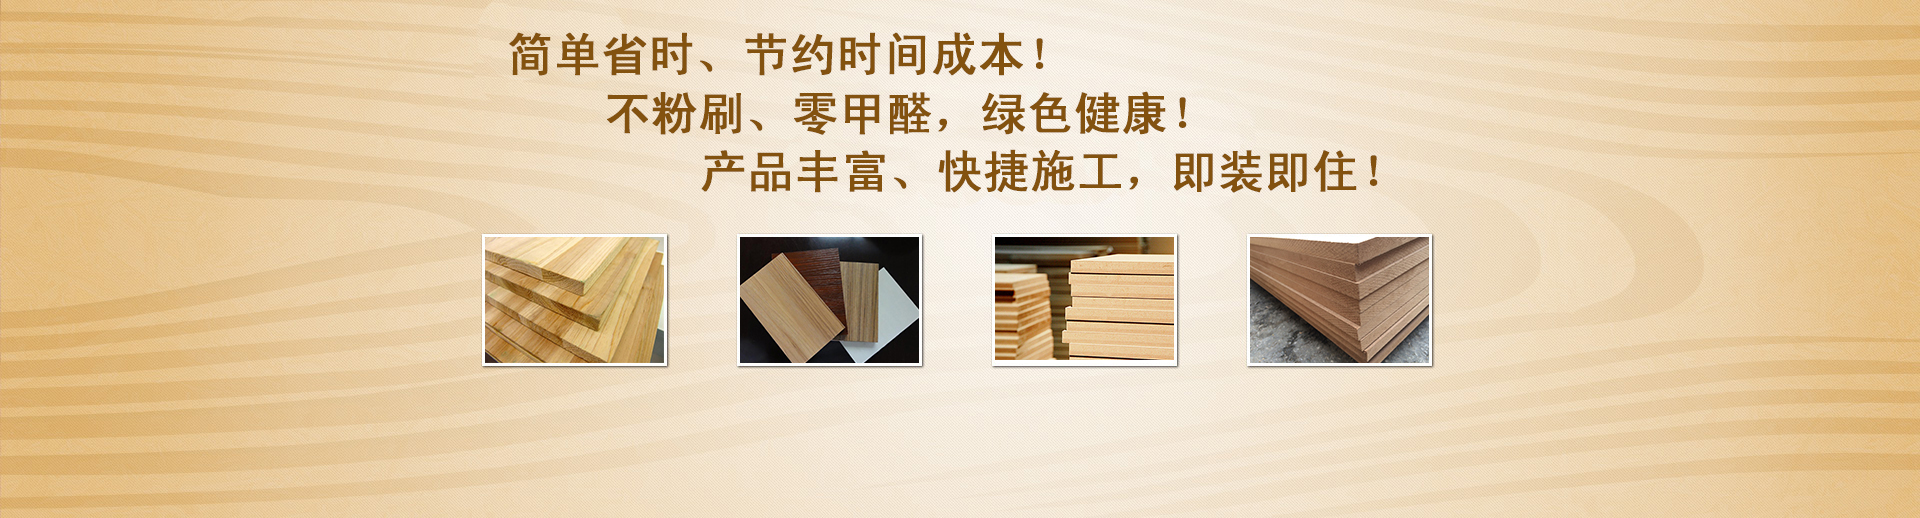 多层实木板的生产工艺贵州阳多层板批发厂家为你介绍